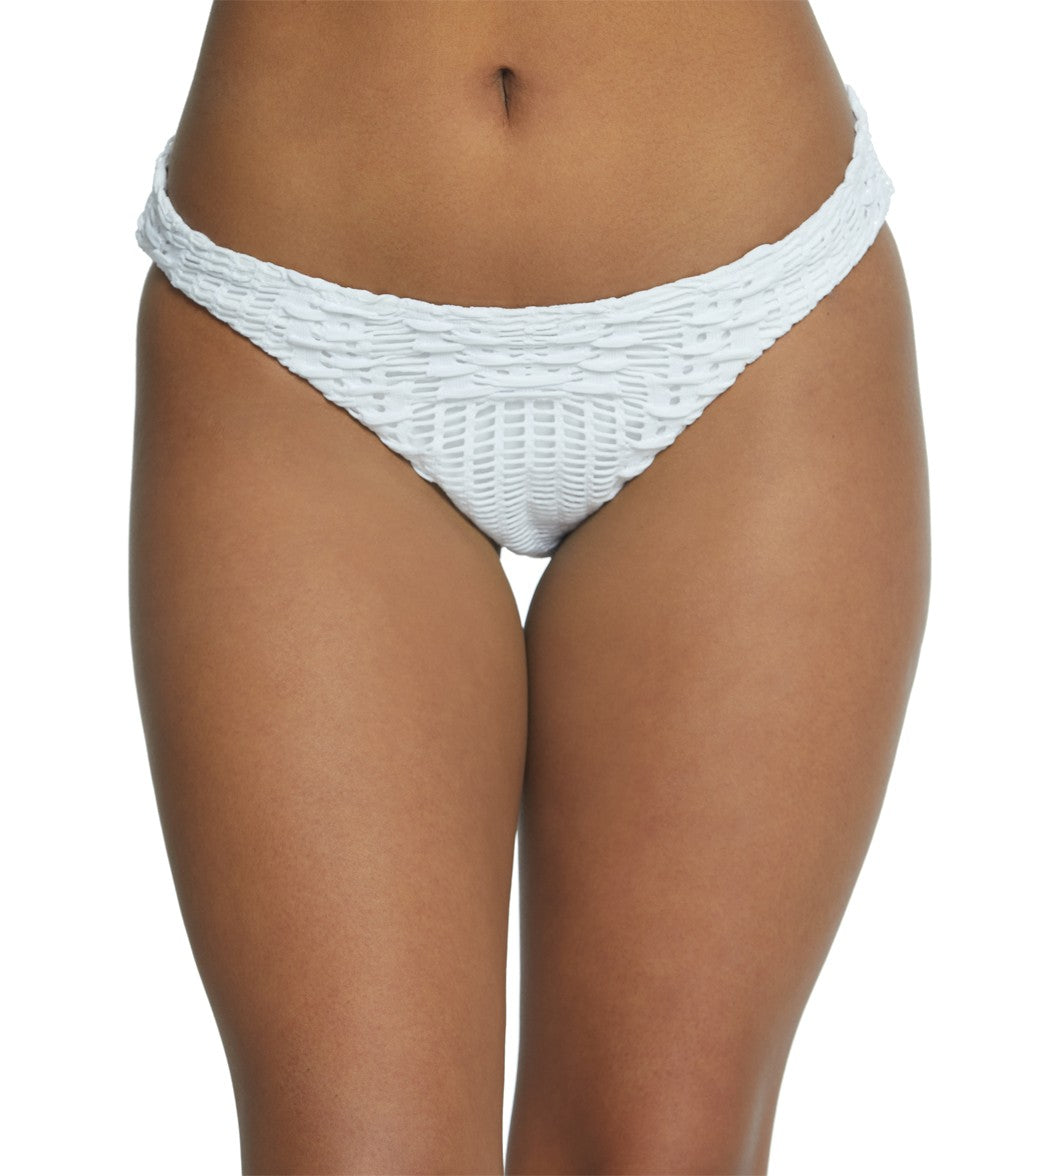 Coco Reef Pura Vida Classic Bikini Bottom - White Small - Swimoutlet.com